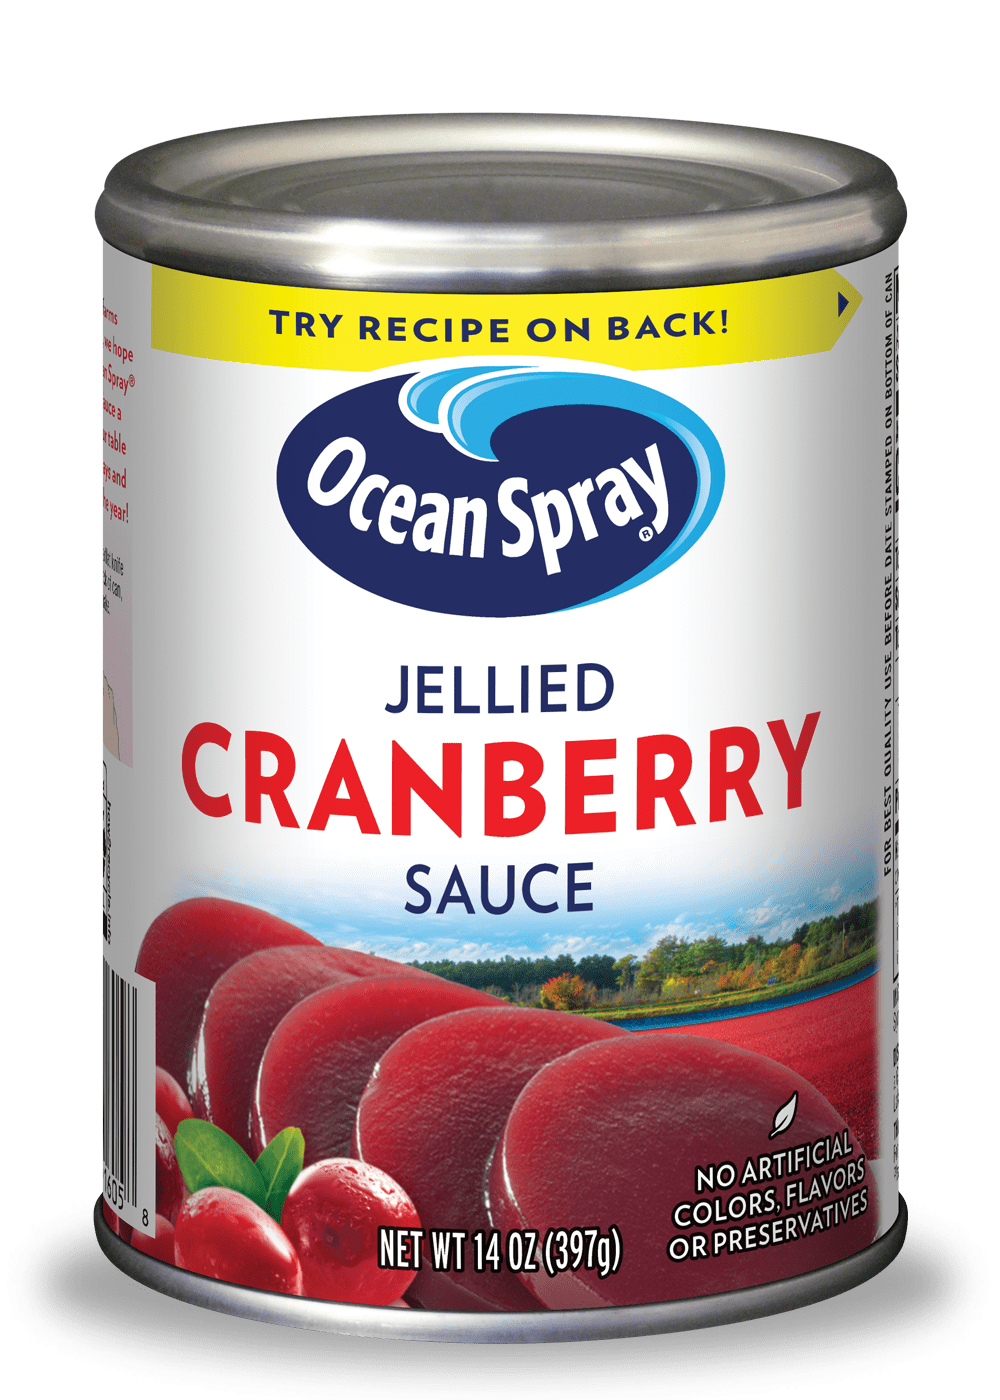 Avec le jus de cranberry Ocean Sprayon a tout bon pour rester en forme